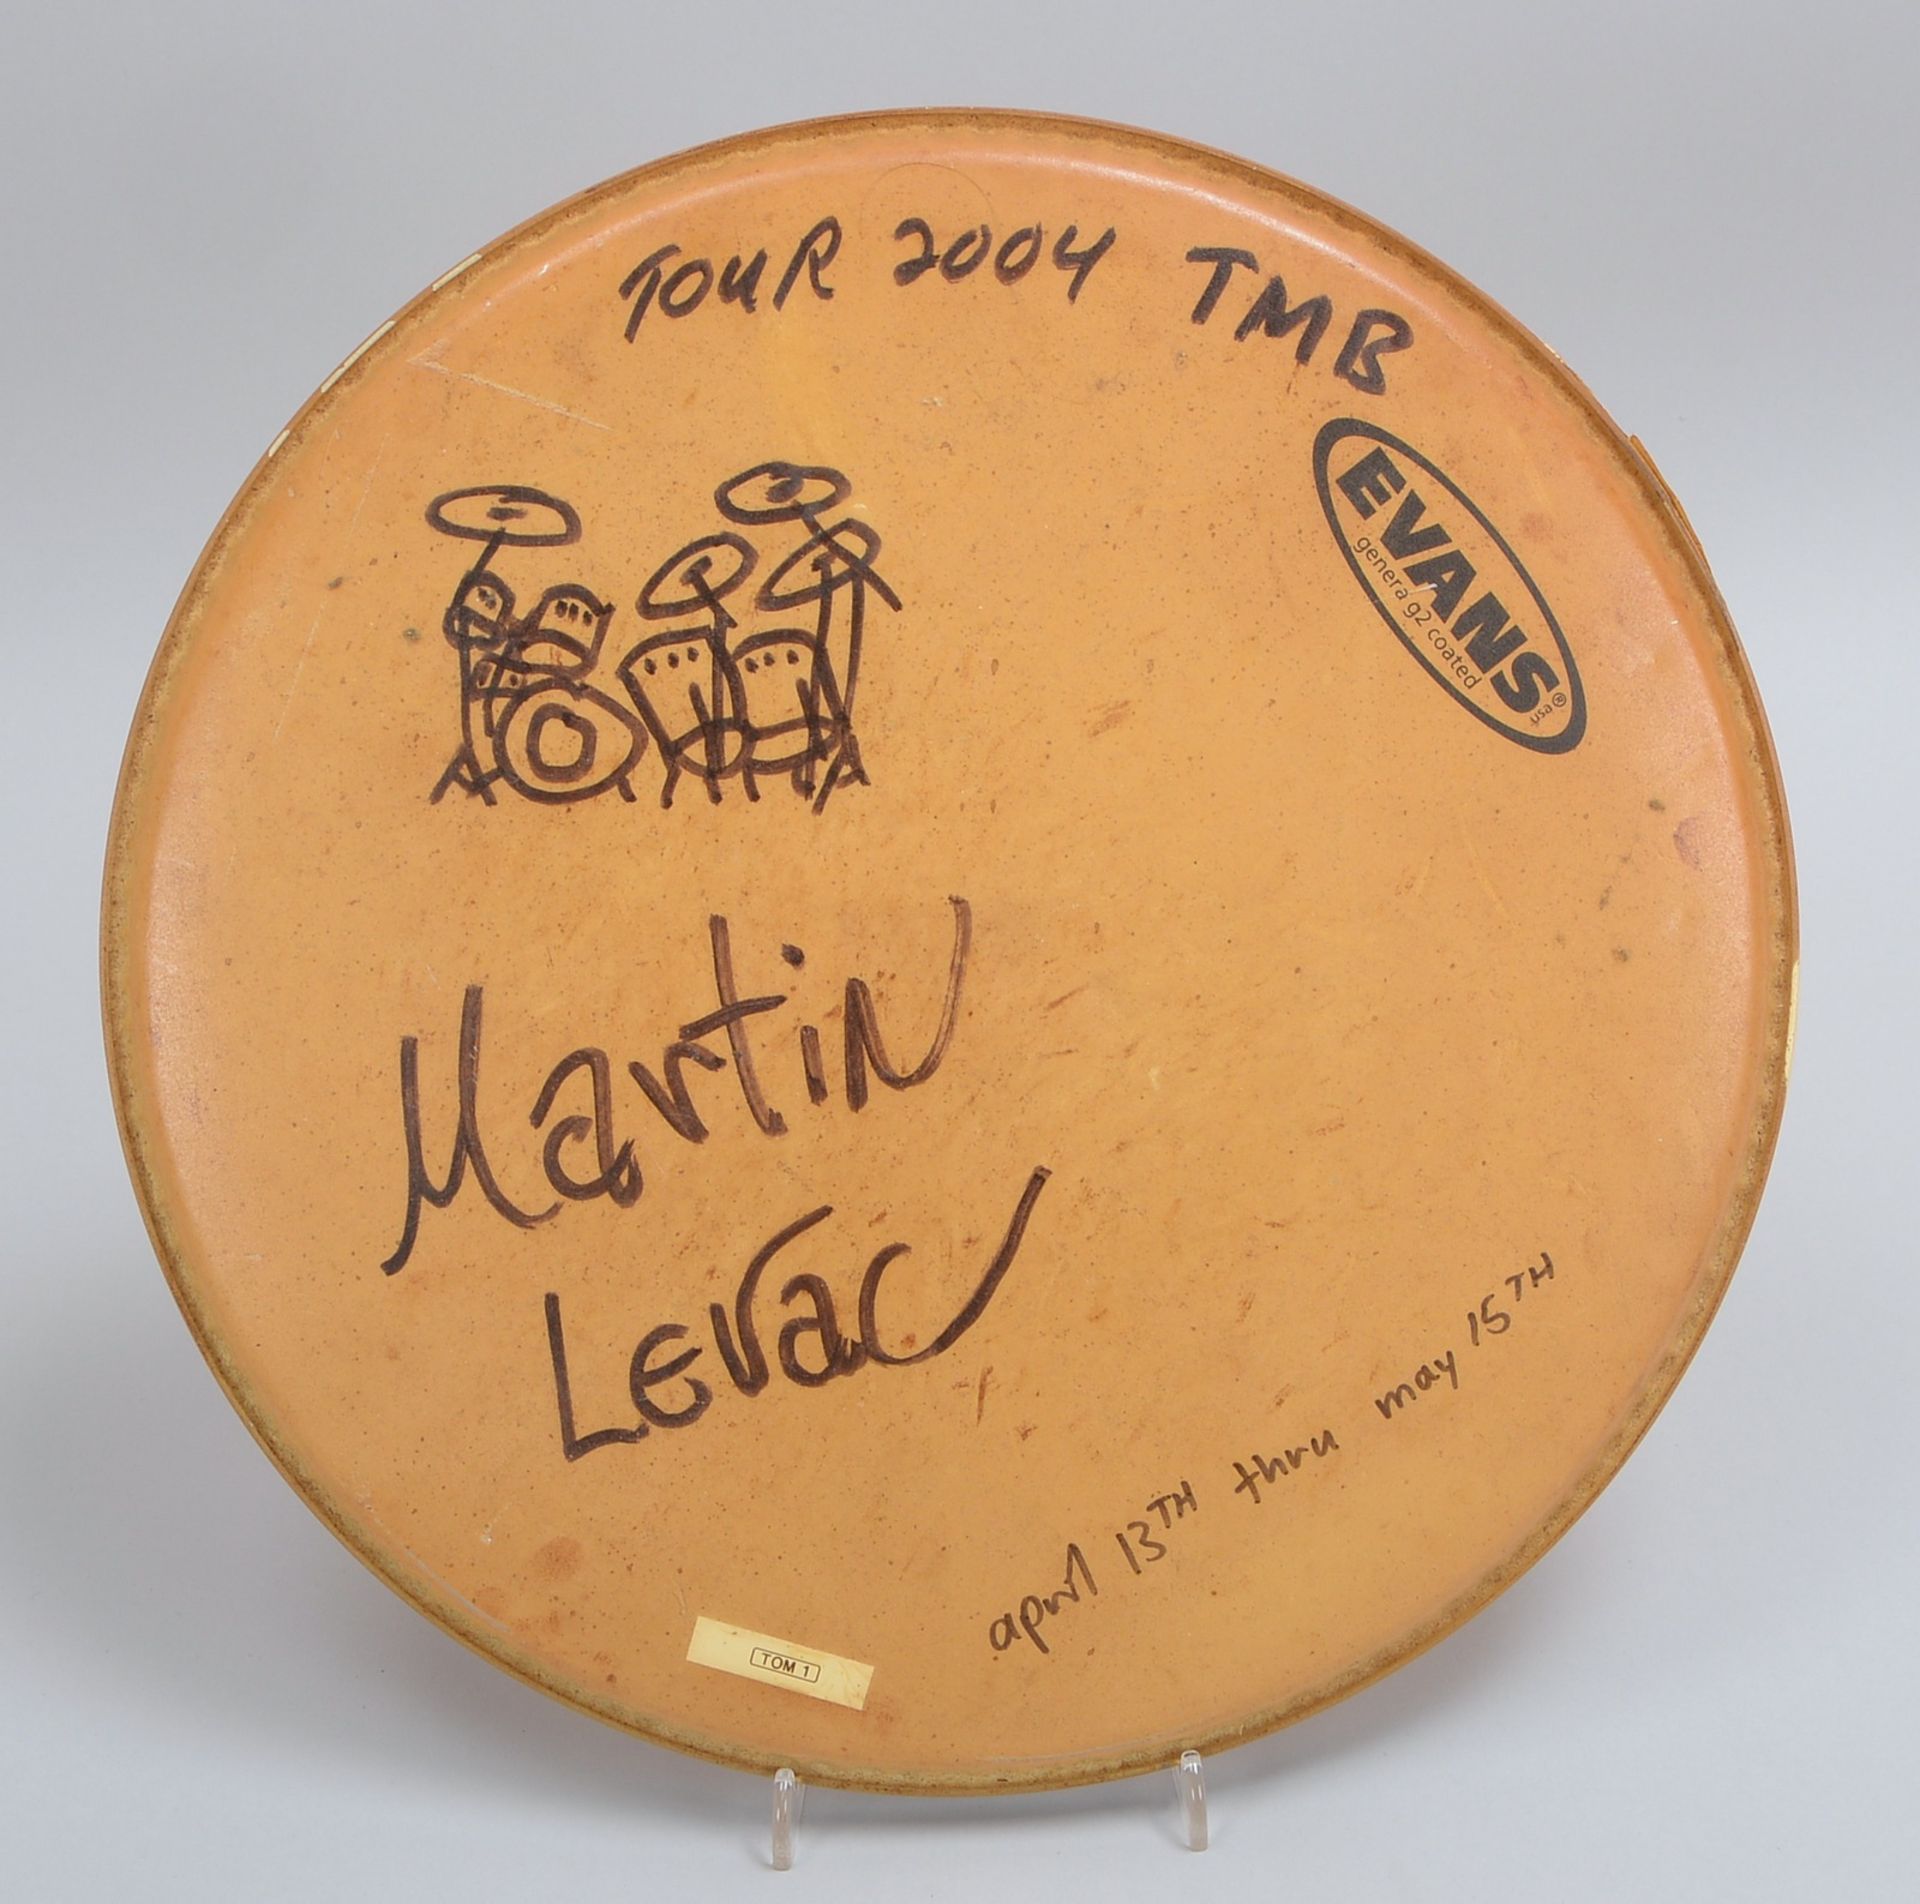 Drum-Fell, Evans 'Genera', von TMB-Drummer Martin Levac sign./dat. - Sammlerstück!